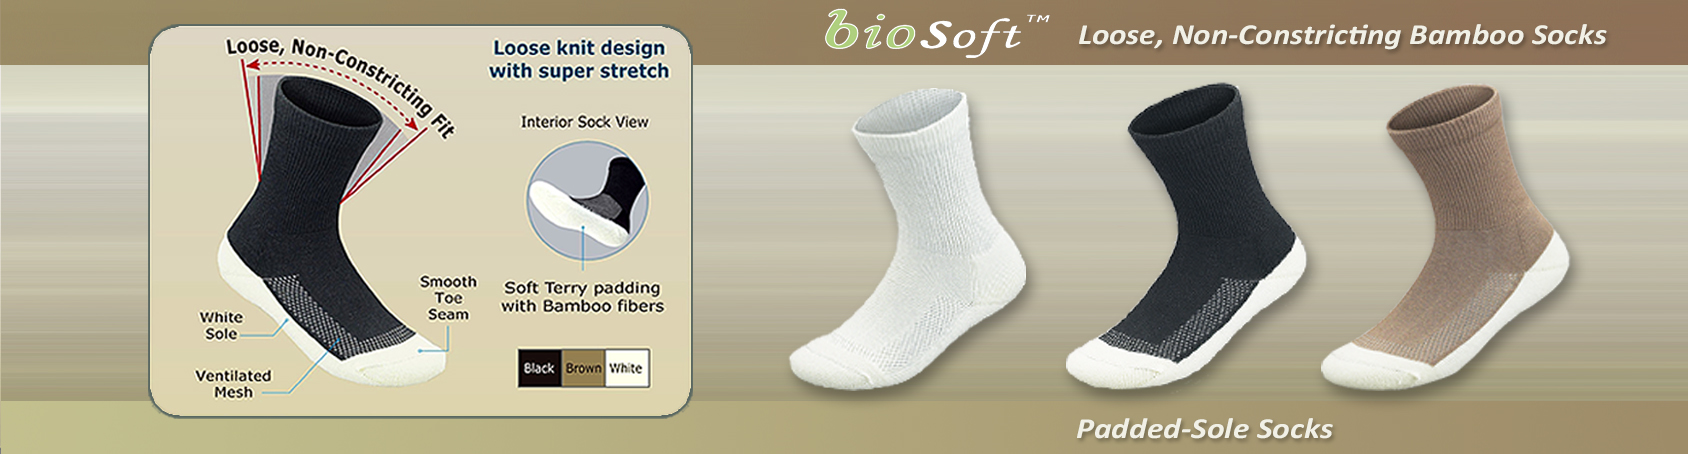 Comfort Socks, Diabetic socks, Wide socks | Orthofeet